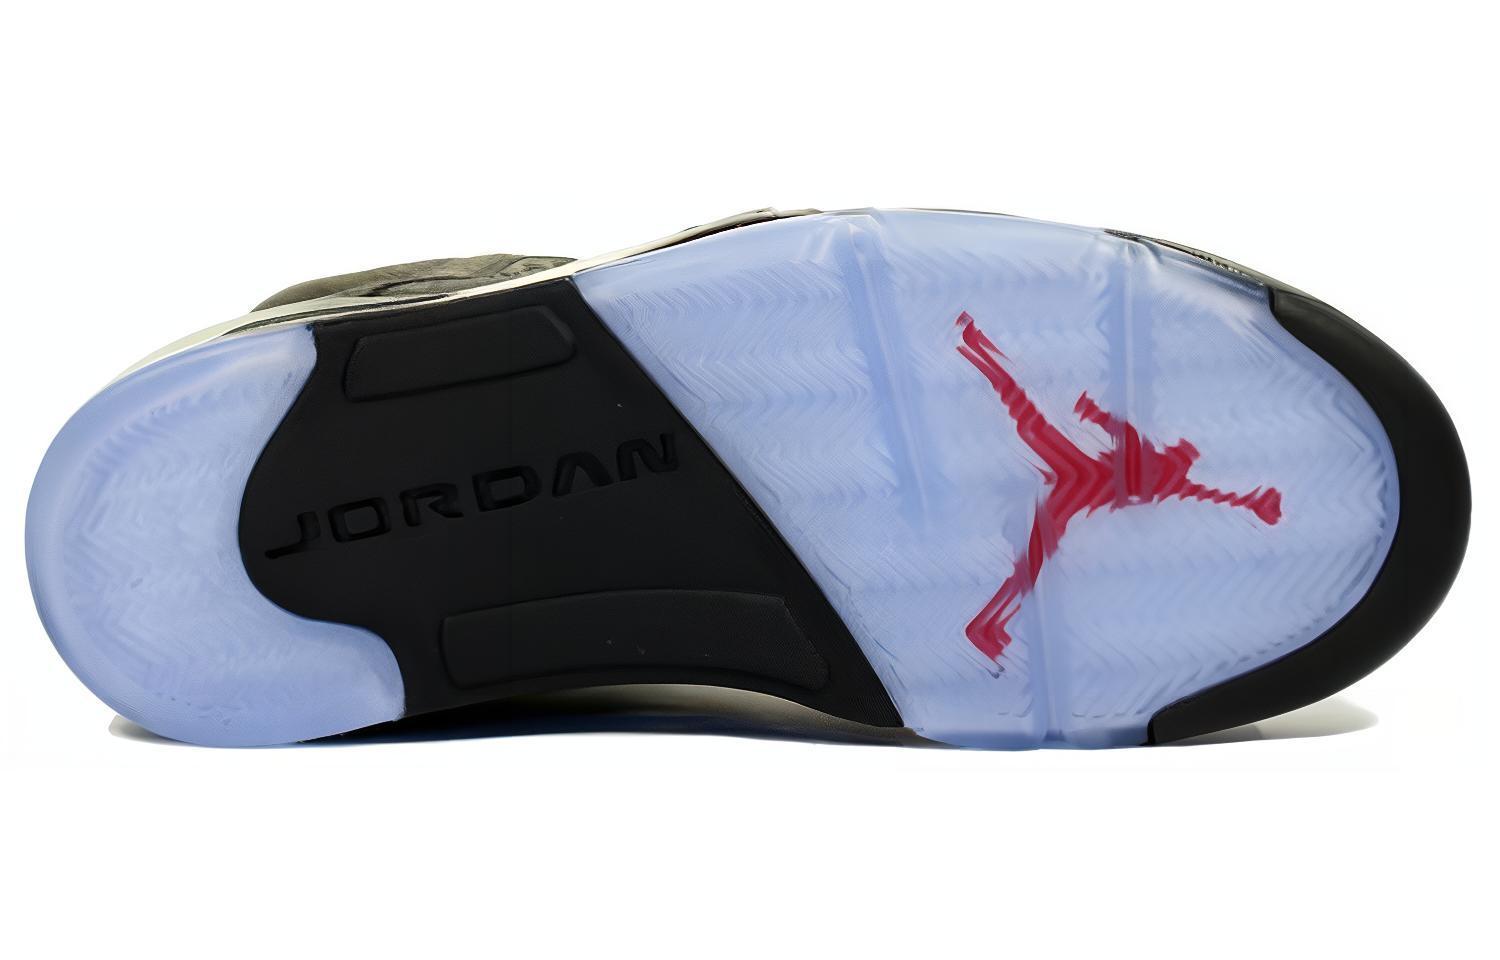 Jordan Air Jordan 5 Retro Black Grape GS 2013